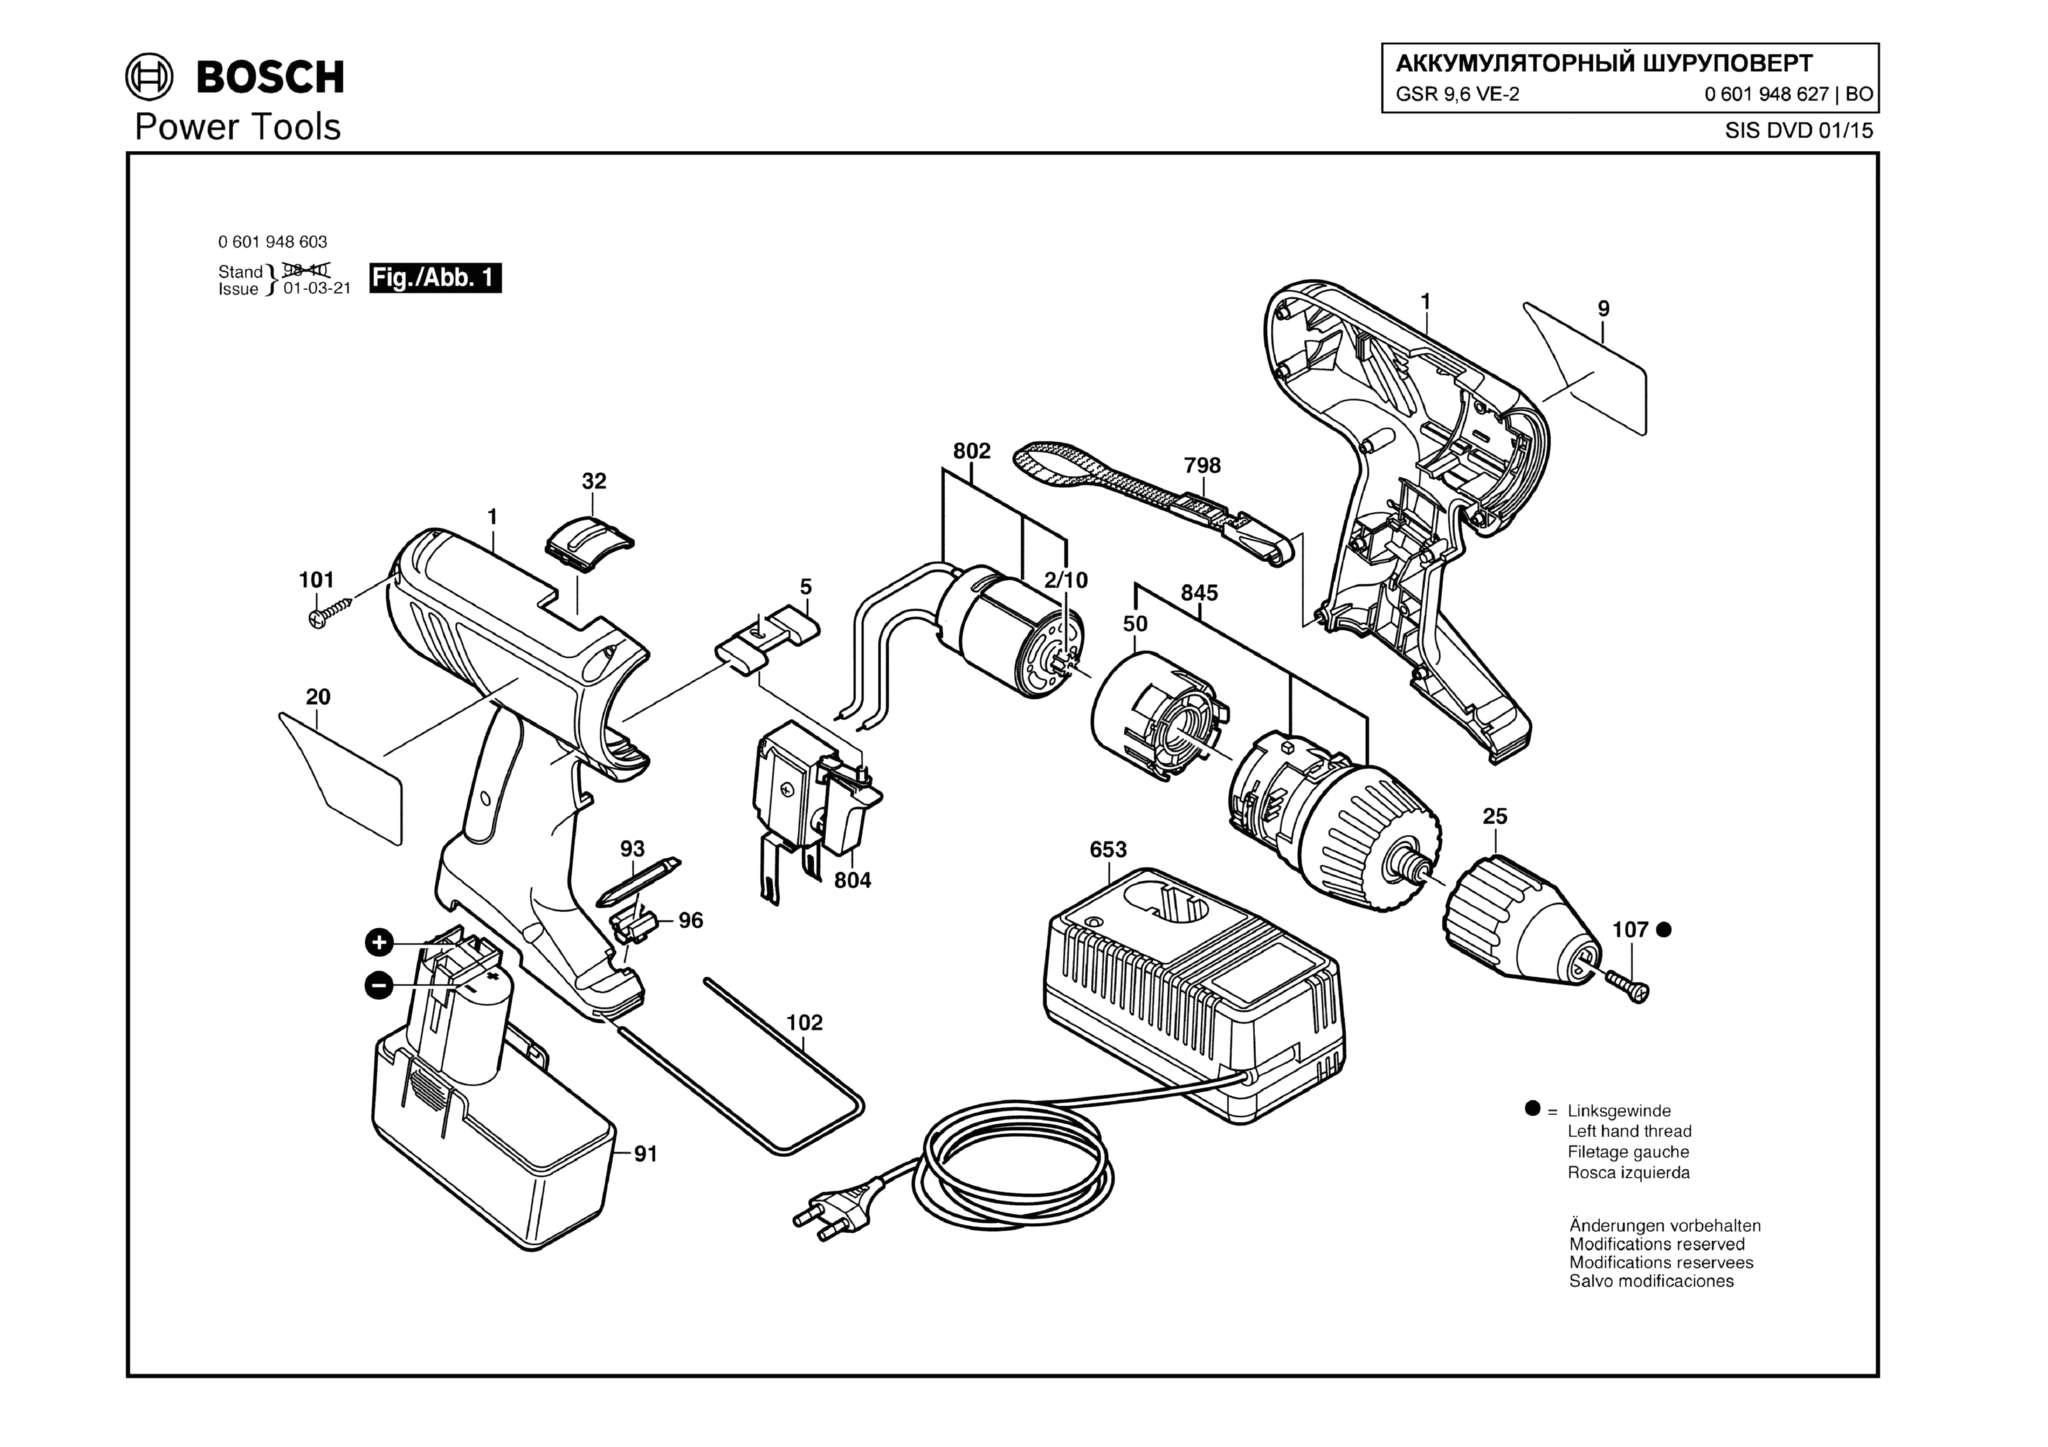 Запчасти, схема и деталировка Bosch GSR 9,6 VE-2 (ТИП 0601948627)